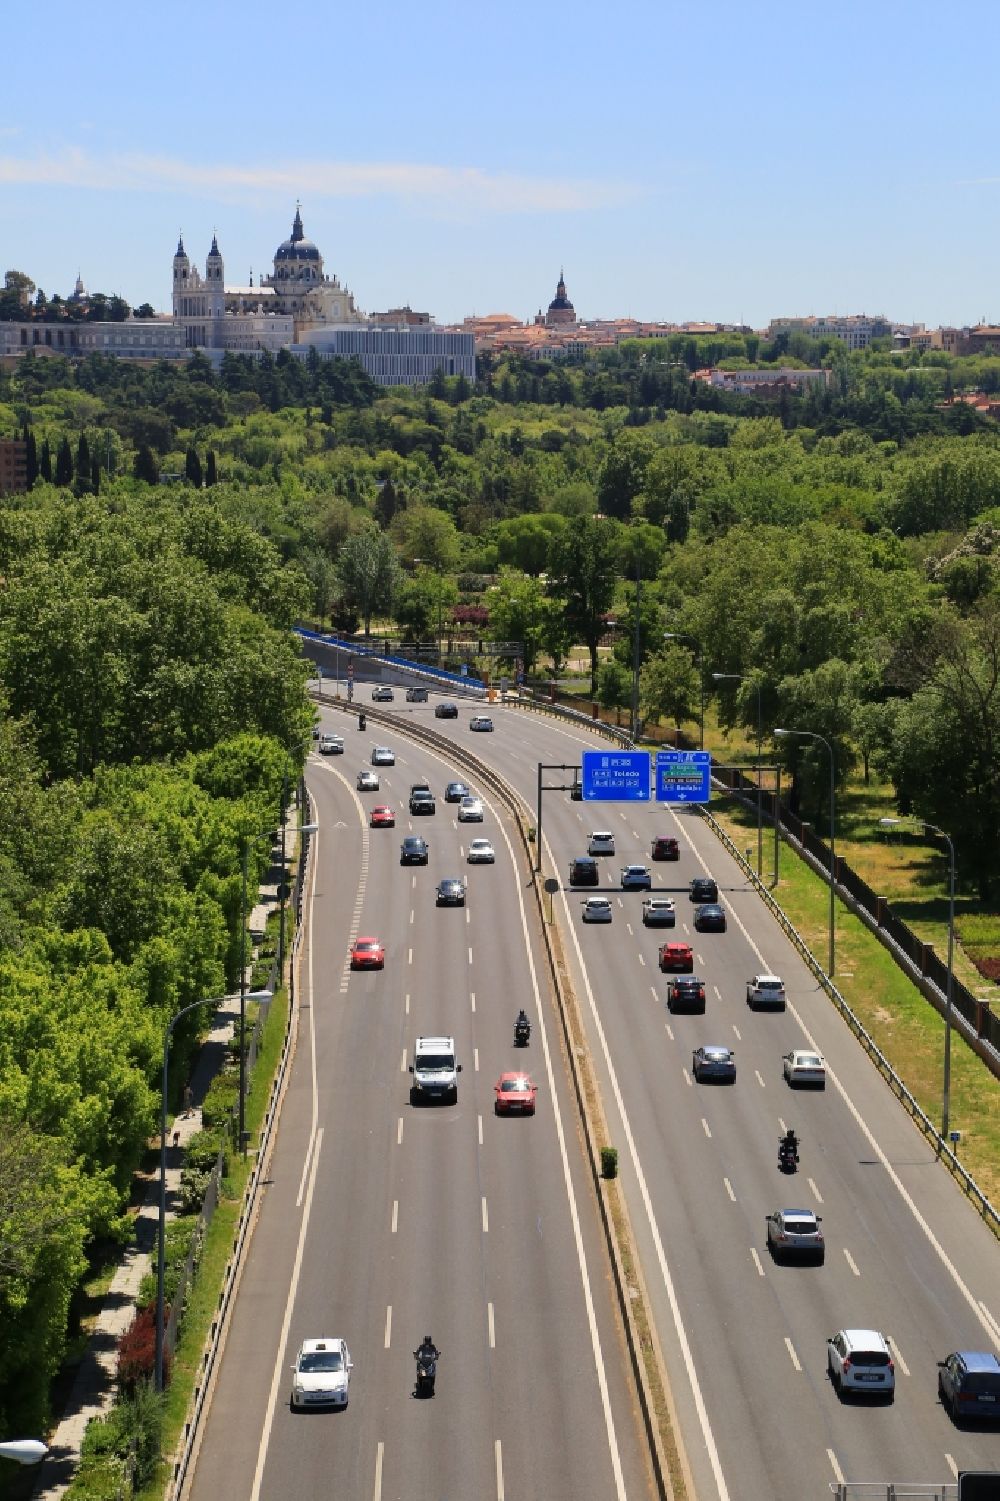 Luftaufnahme Madrid - Autobahn- Trasse und Streckenverlauf der Ringautobahn M30 mit Blick zur Kathedrale La Almudena in Madrid in Comunidad de Madrid, Spanien